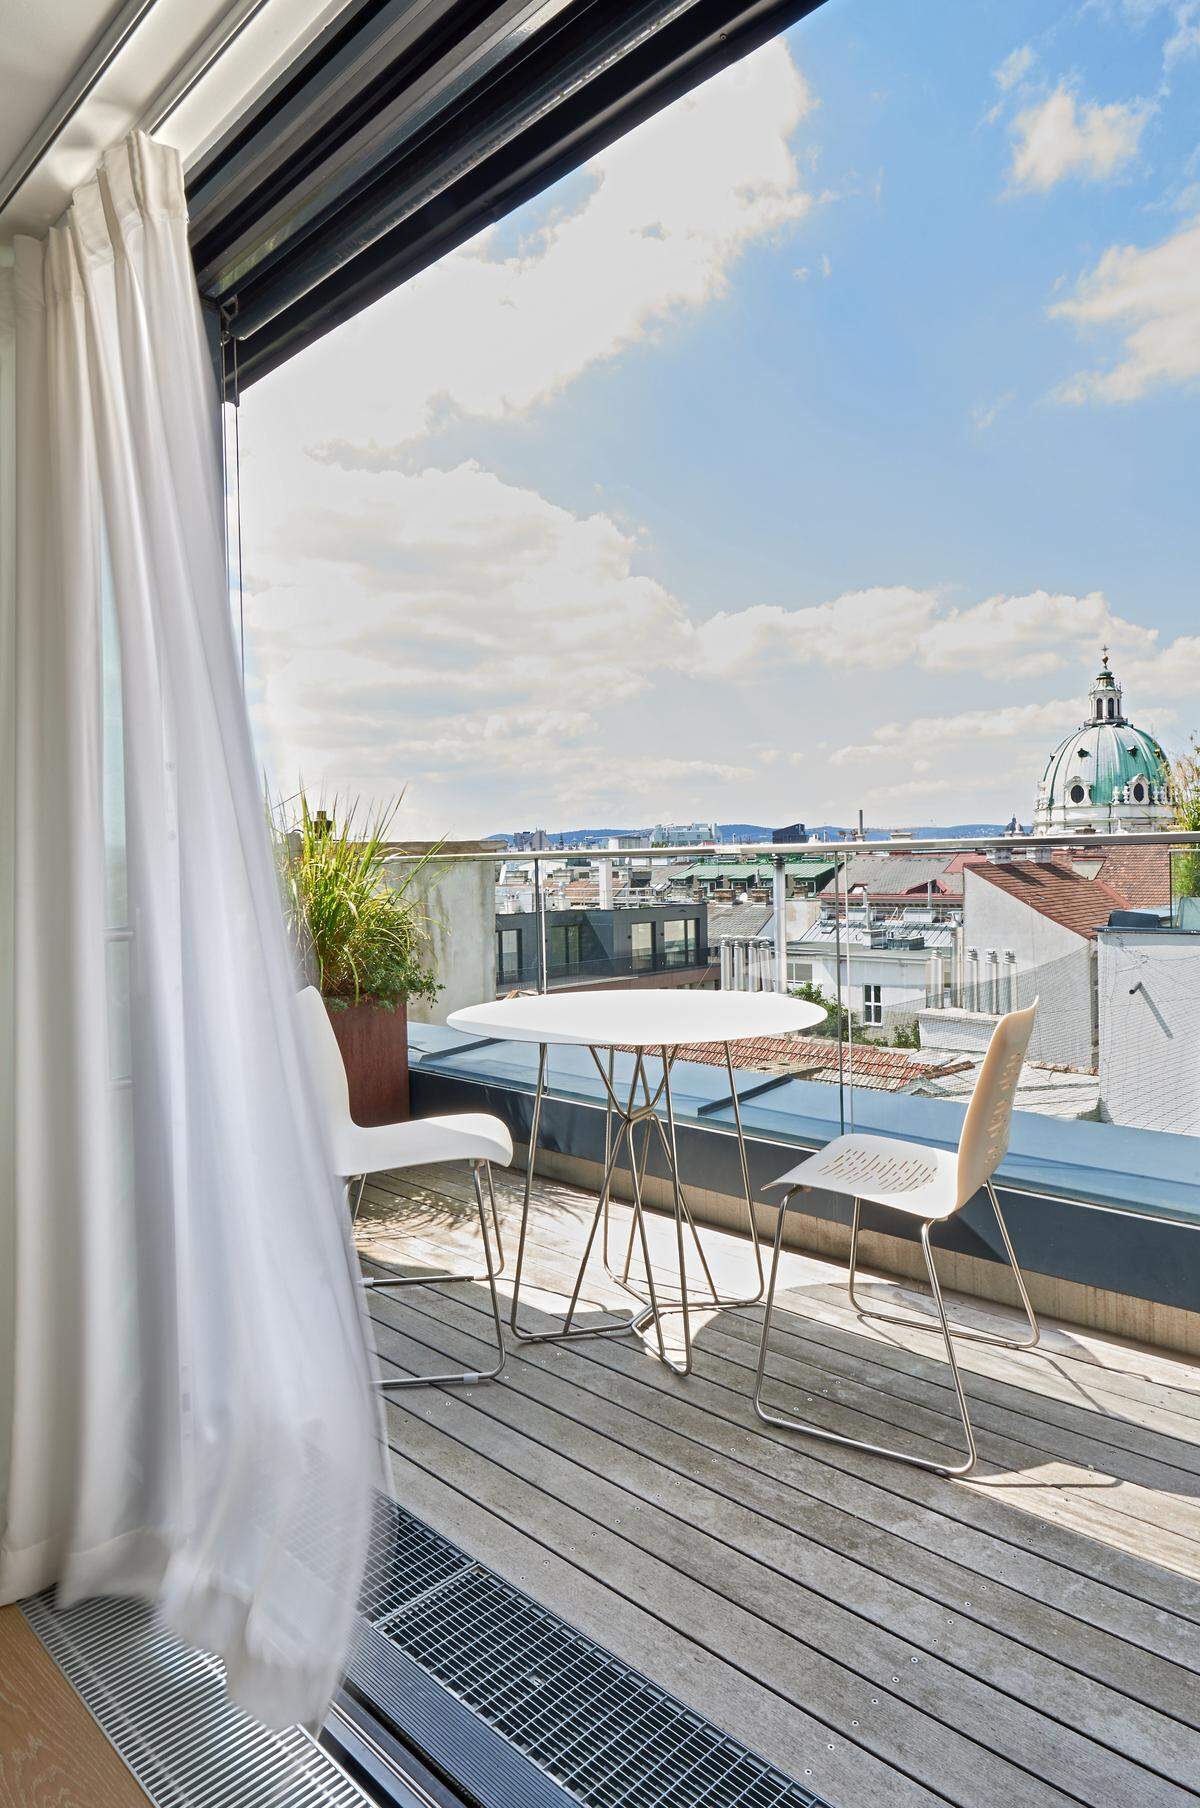 Ein Beispiel für große Ausblicke von ganz oben ist ein Penthouse mit 360-Grad-Terrasse, das derzeit in der Nähe des Palais Schwarzenberg in Wien zum Verkauf steht. Und in Sachen Ausblick nicht nur die Wiener Dachlandschaft, sondern auch die Türme der Karlskirche zu bieten hat.